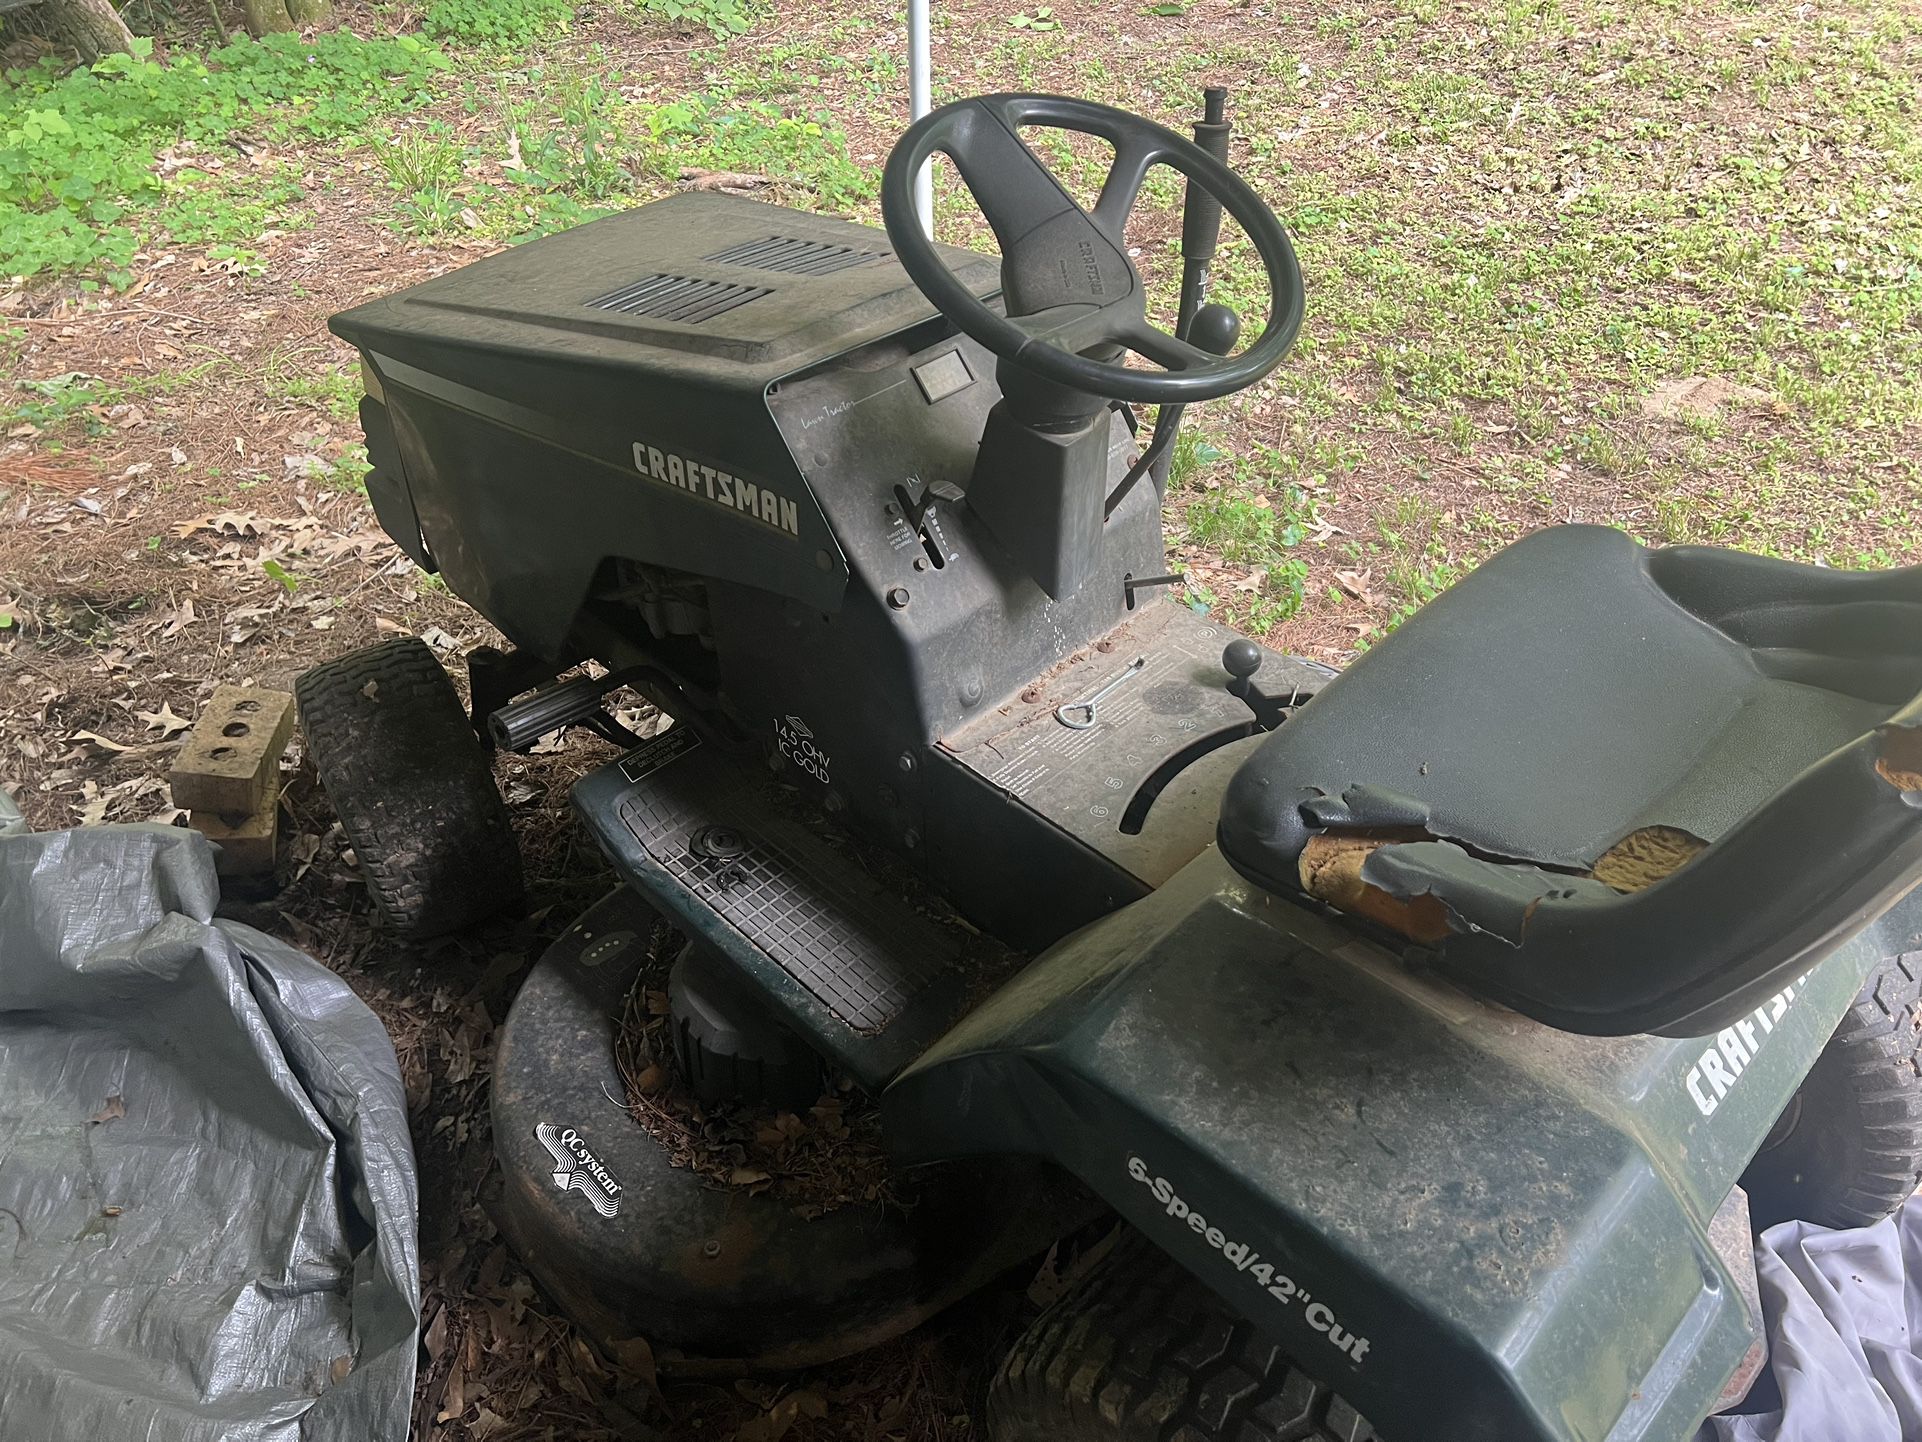 Craftsman speed 42” Riding Lawn Mower 